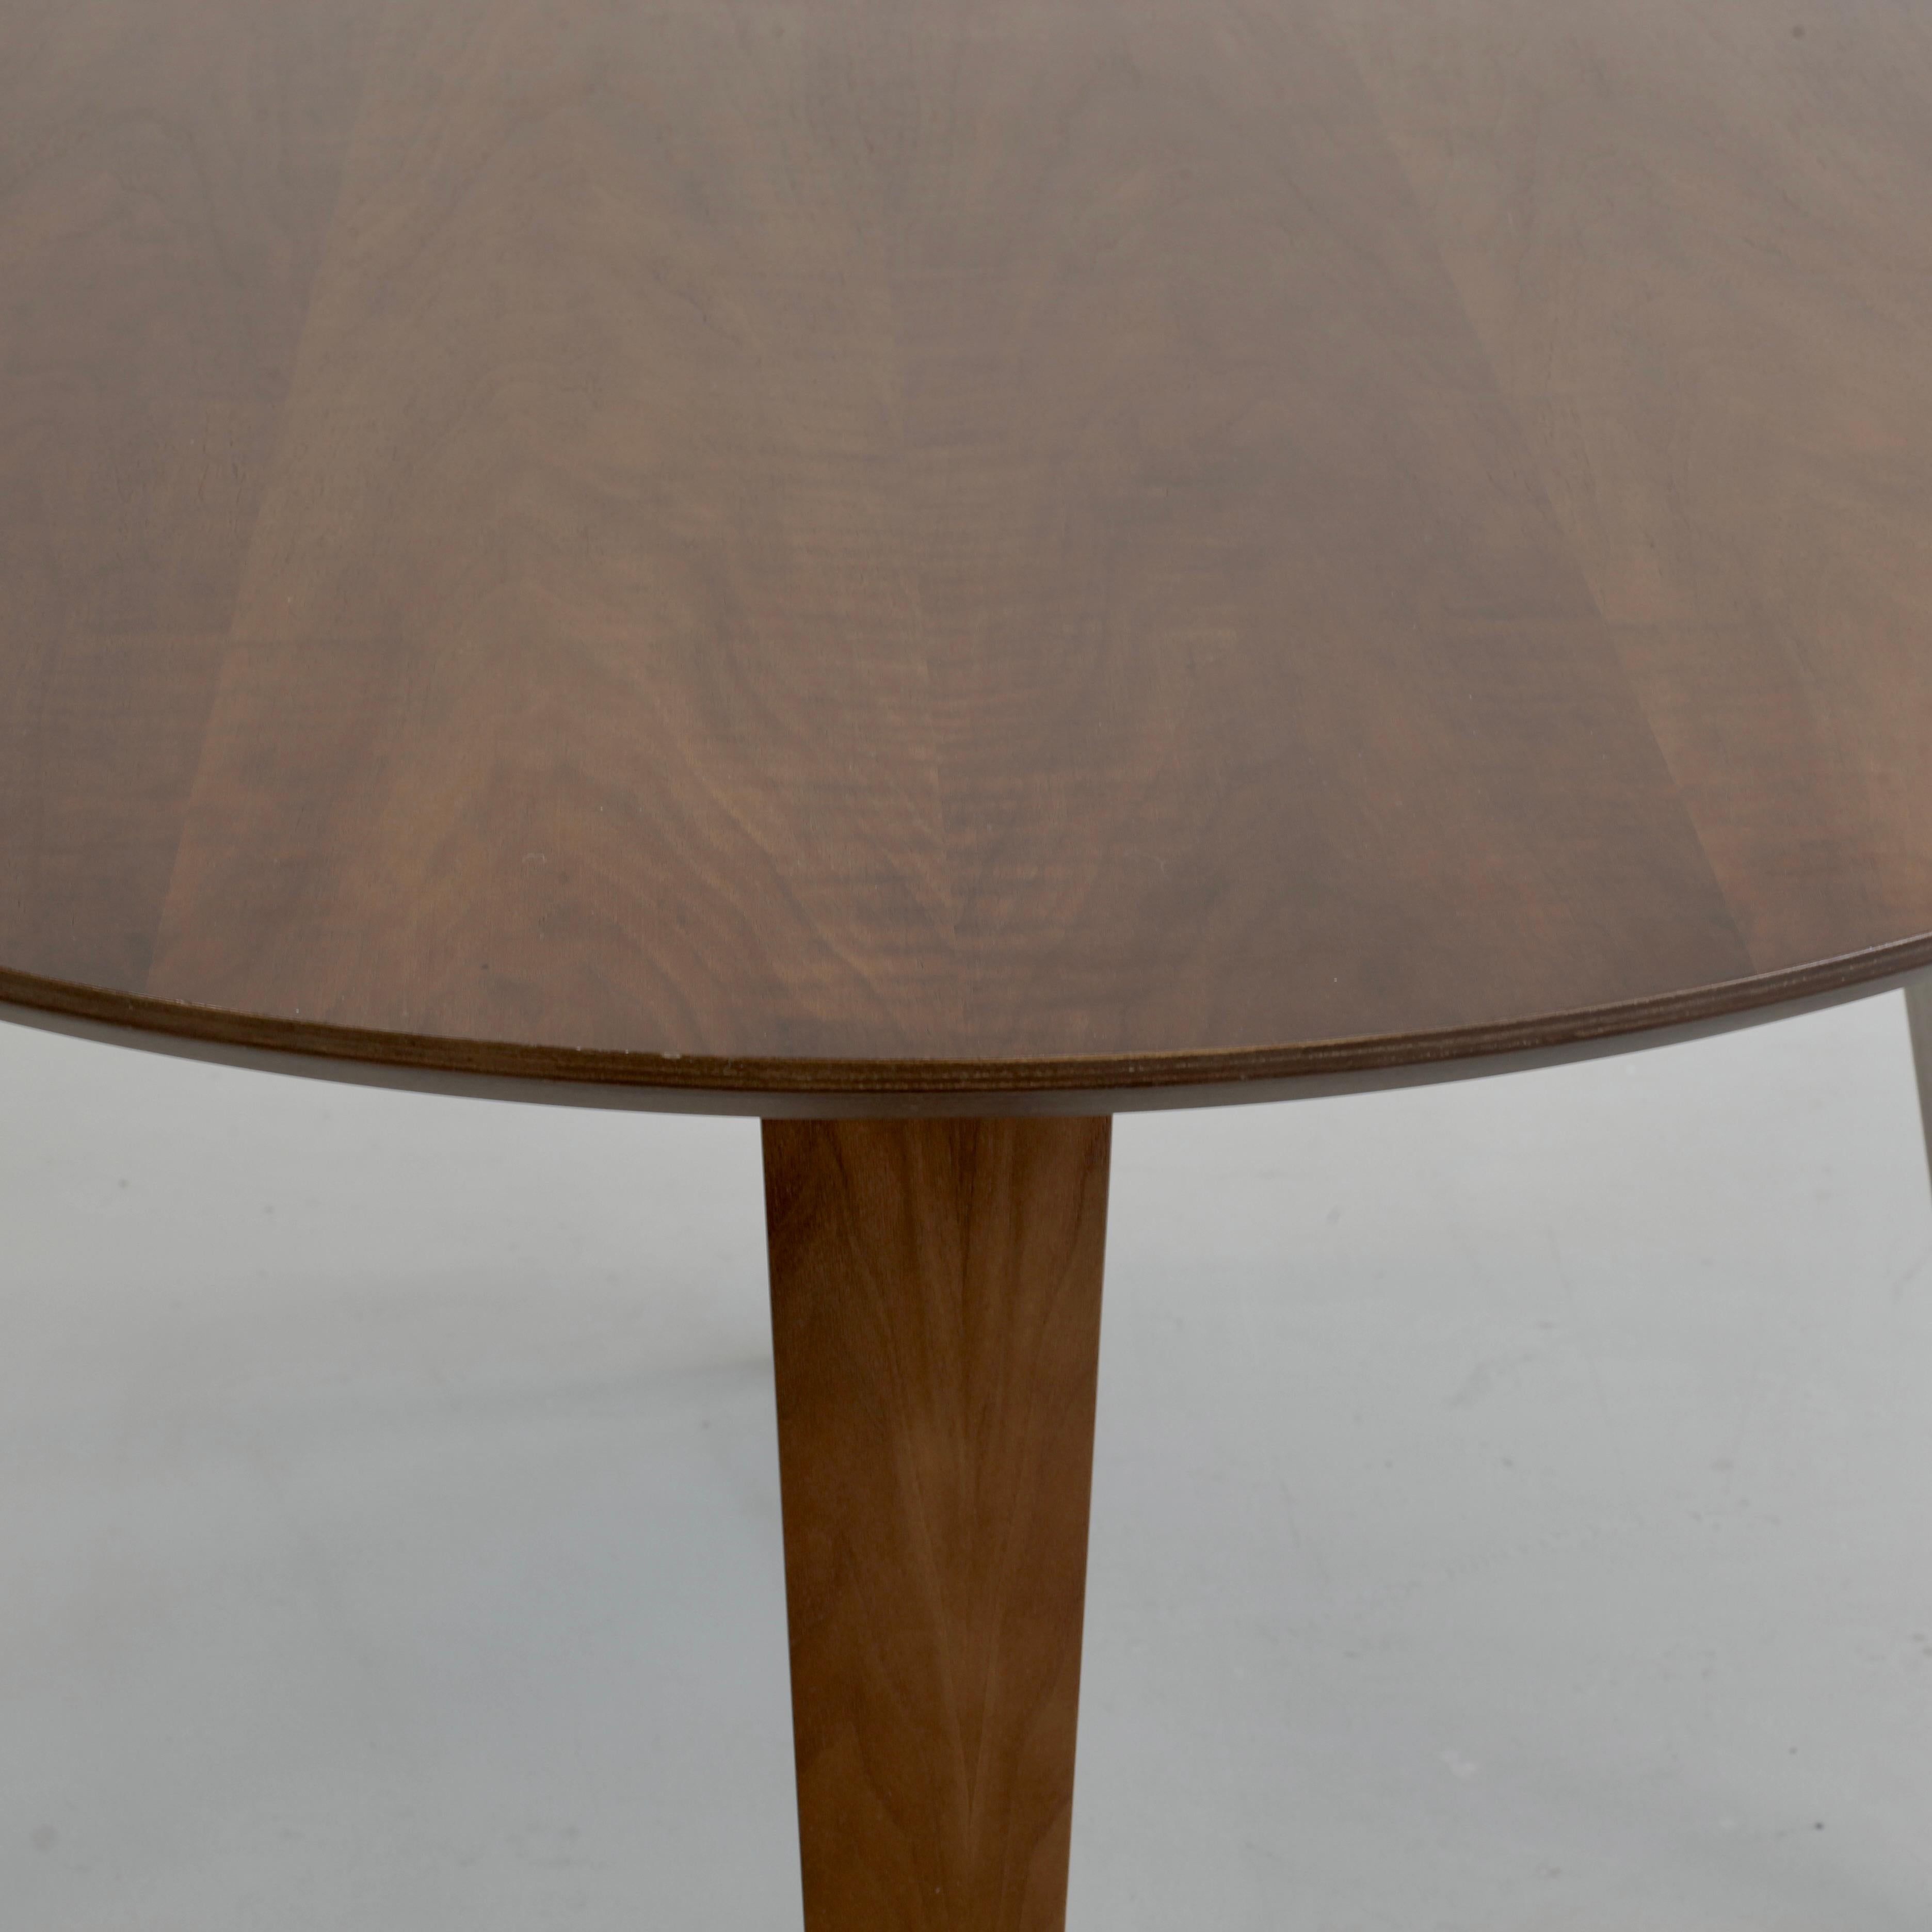 Table à manger ronde conçue par Benjamin Cherner. U.S.A., Cherner, 2003.

Le plateau est réalisé en contreplaqué à couches croisées, avec un placage en noyer classique et un bord apparent profilé conique. Les pieds sont en bois stratifié moulé avec